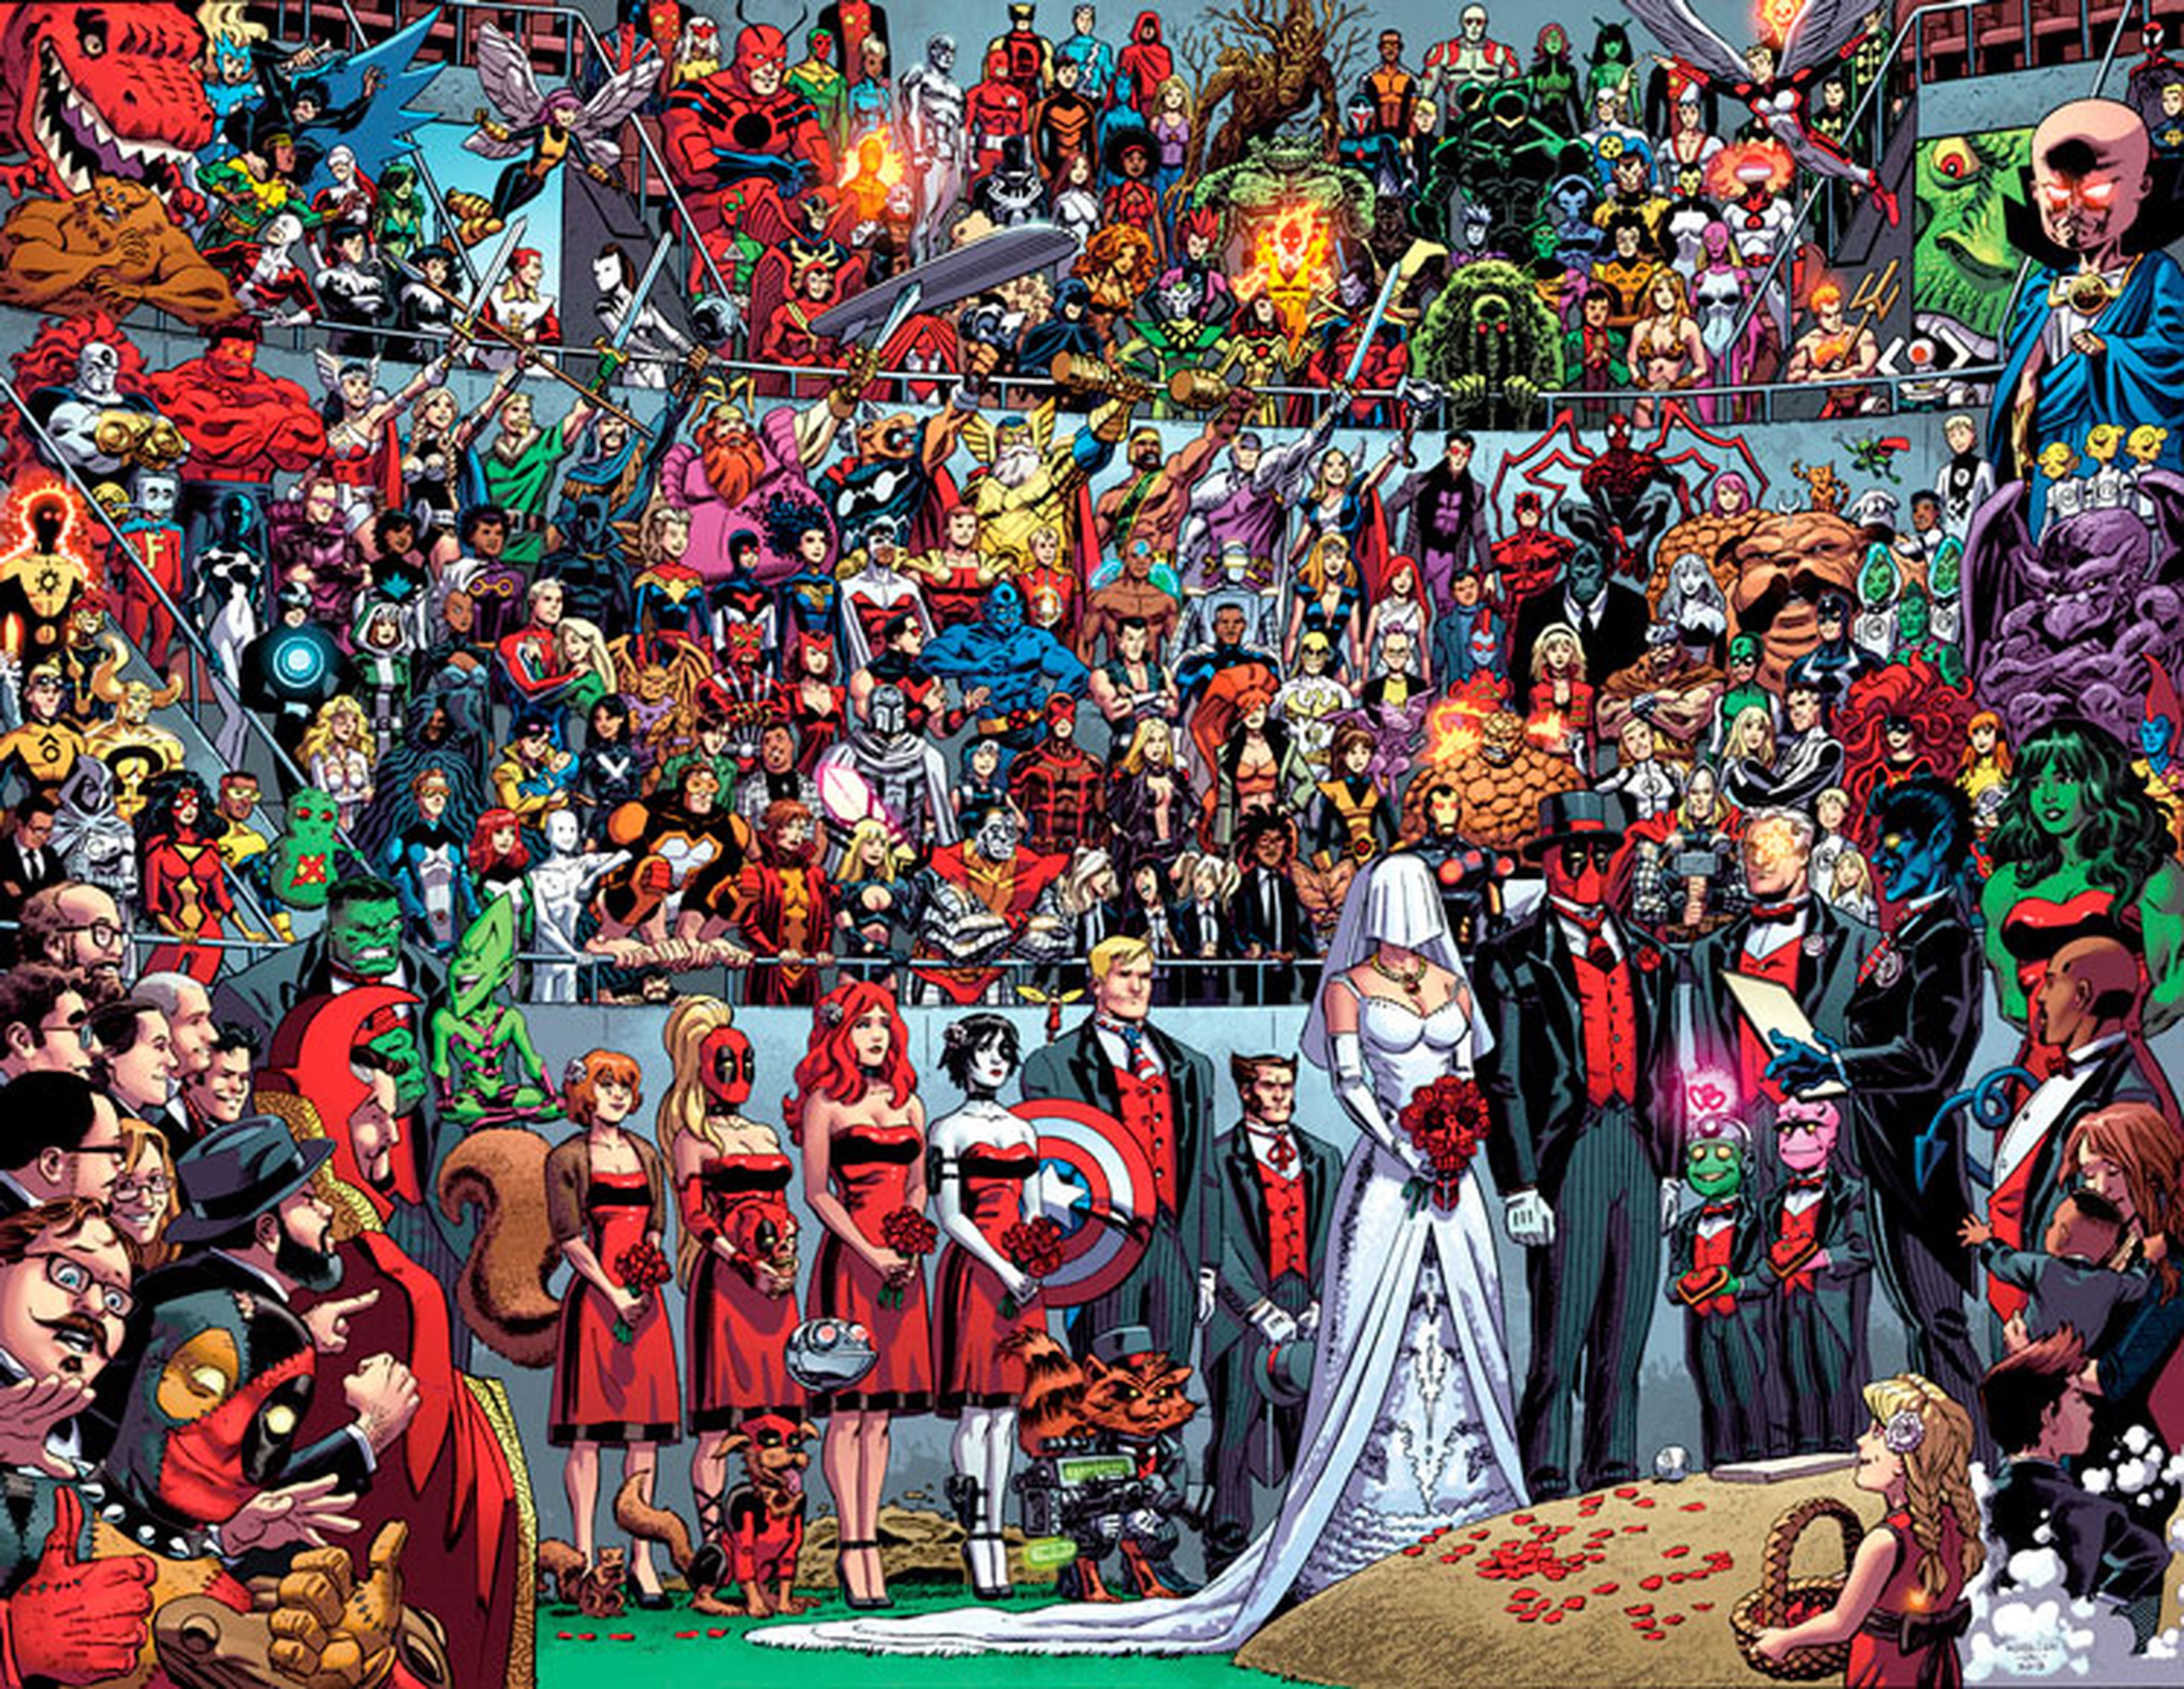 La boda de Deadpool